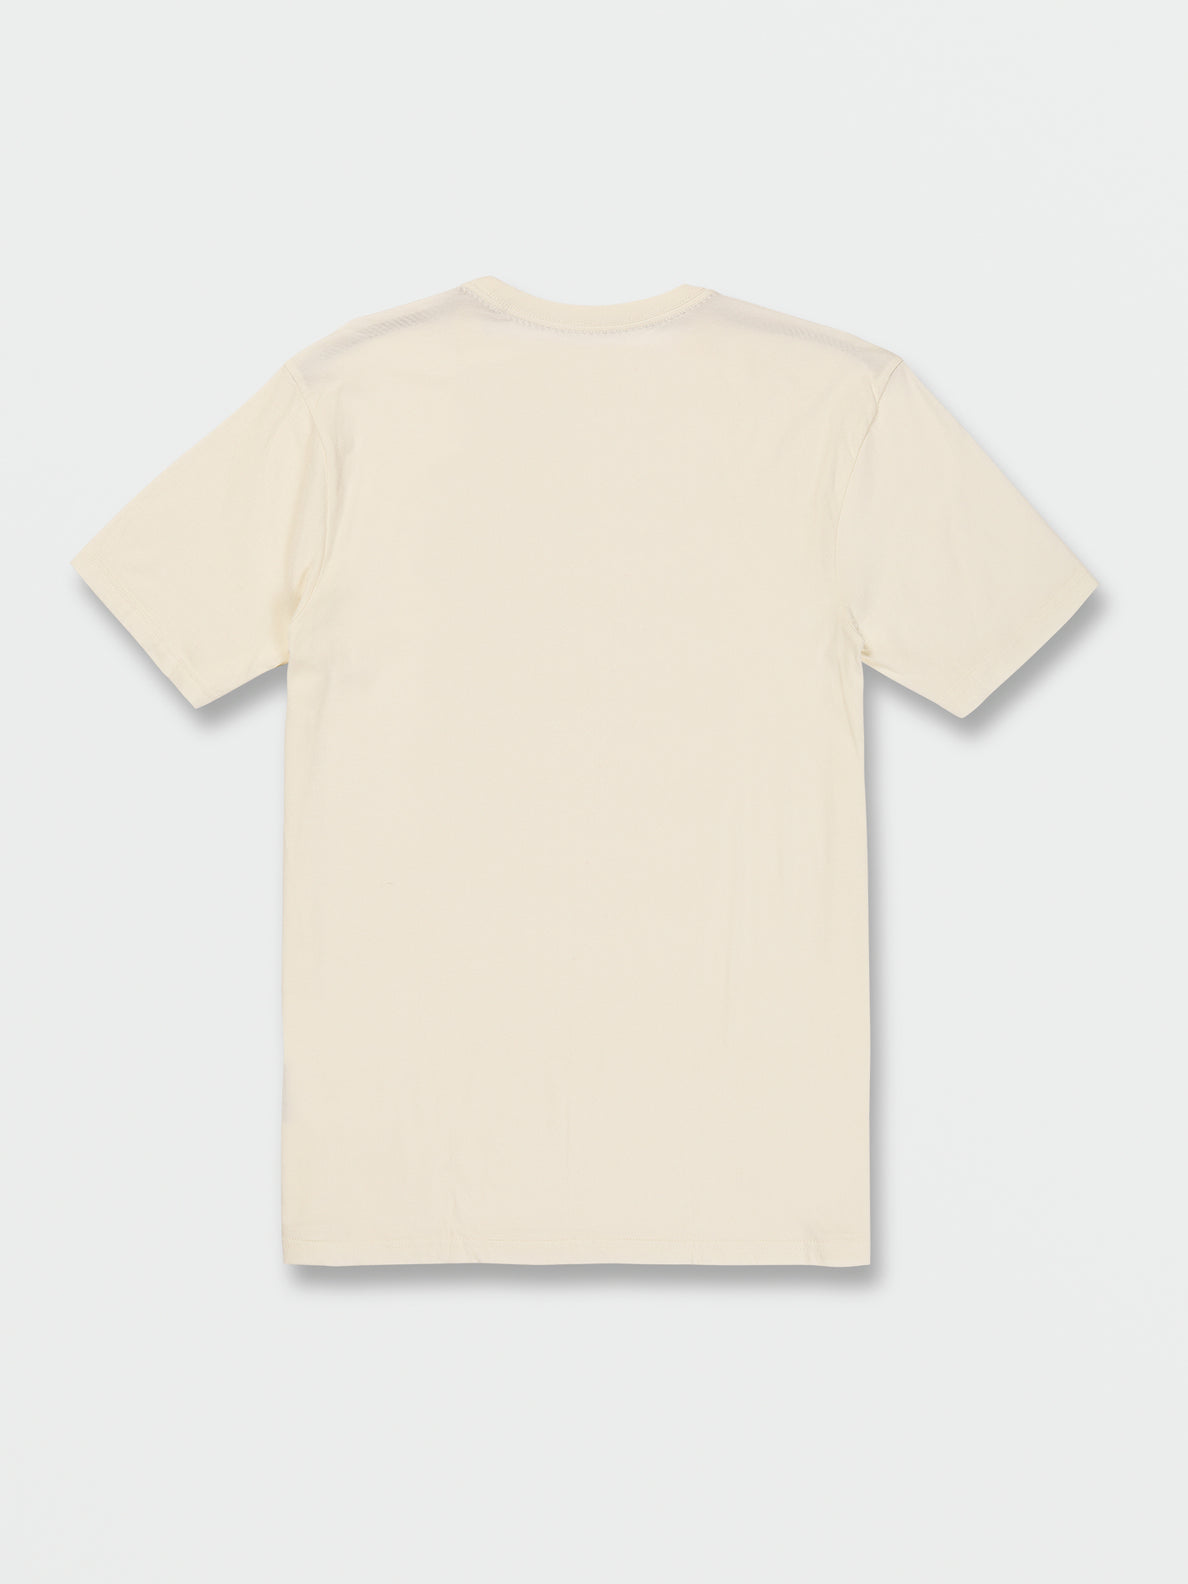 Camiseta Volcom Farm to Yard Submerged - Off White | Camisetas de hombre | Camisetas manga corta de hombre | Volcom Shop | surfdevils.com